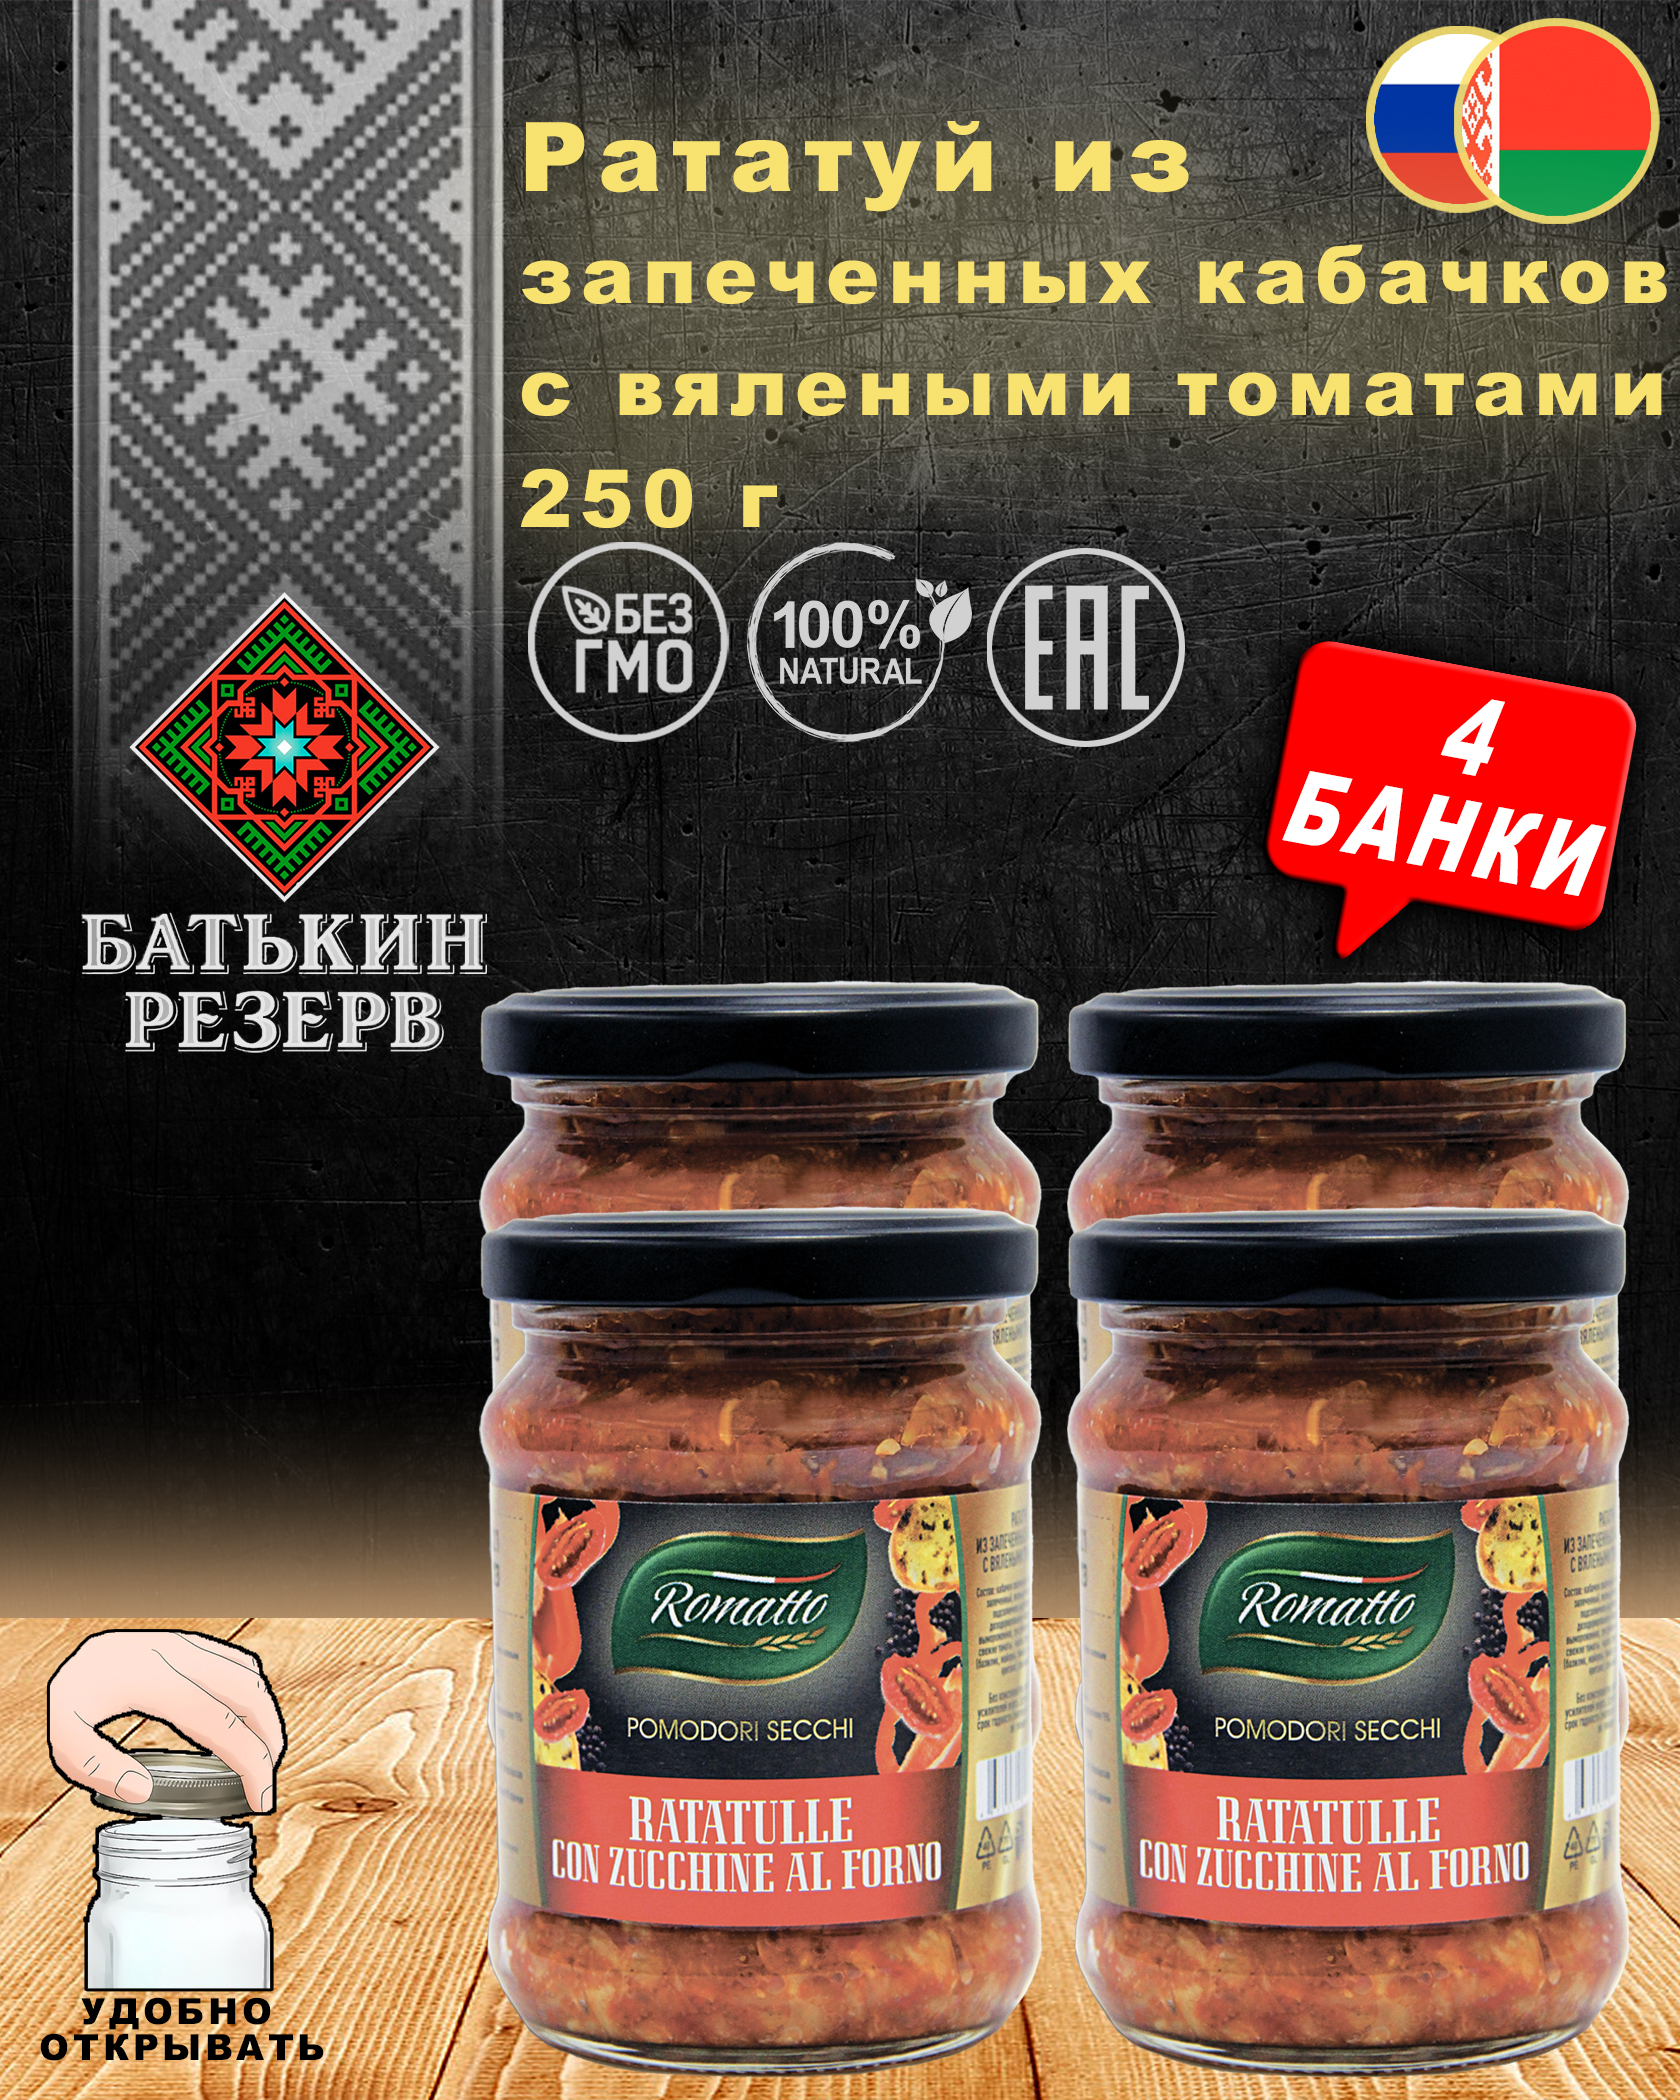 Рататуй из запеченных кабачков с вялеными томатами, Romatto, ТУ, 4 шт. по 250 г